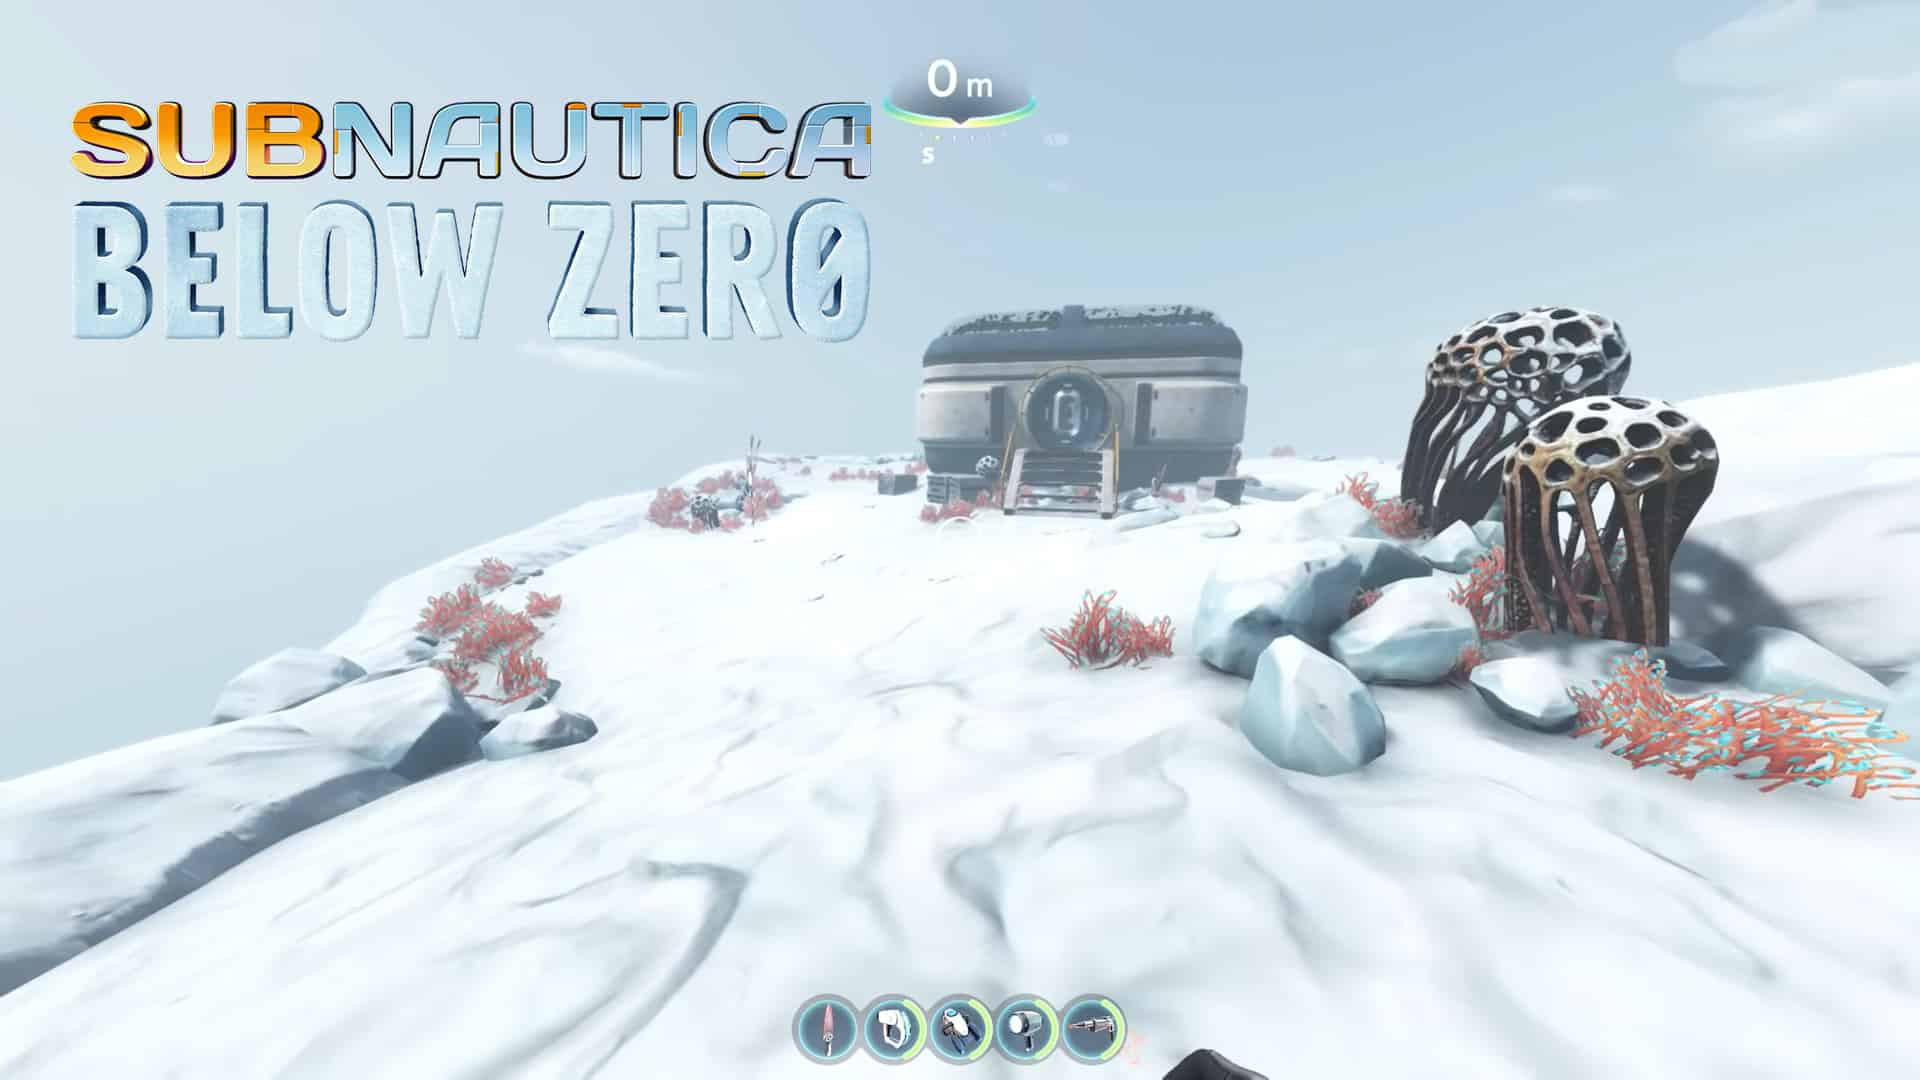 subnautica below zero guide